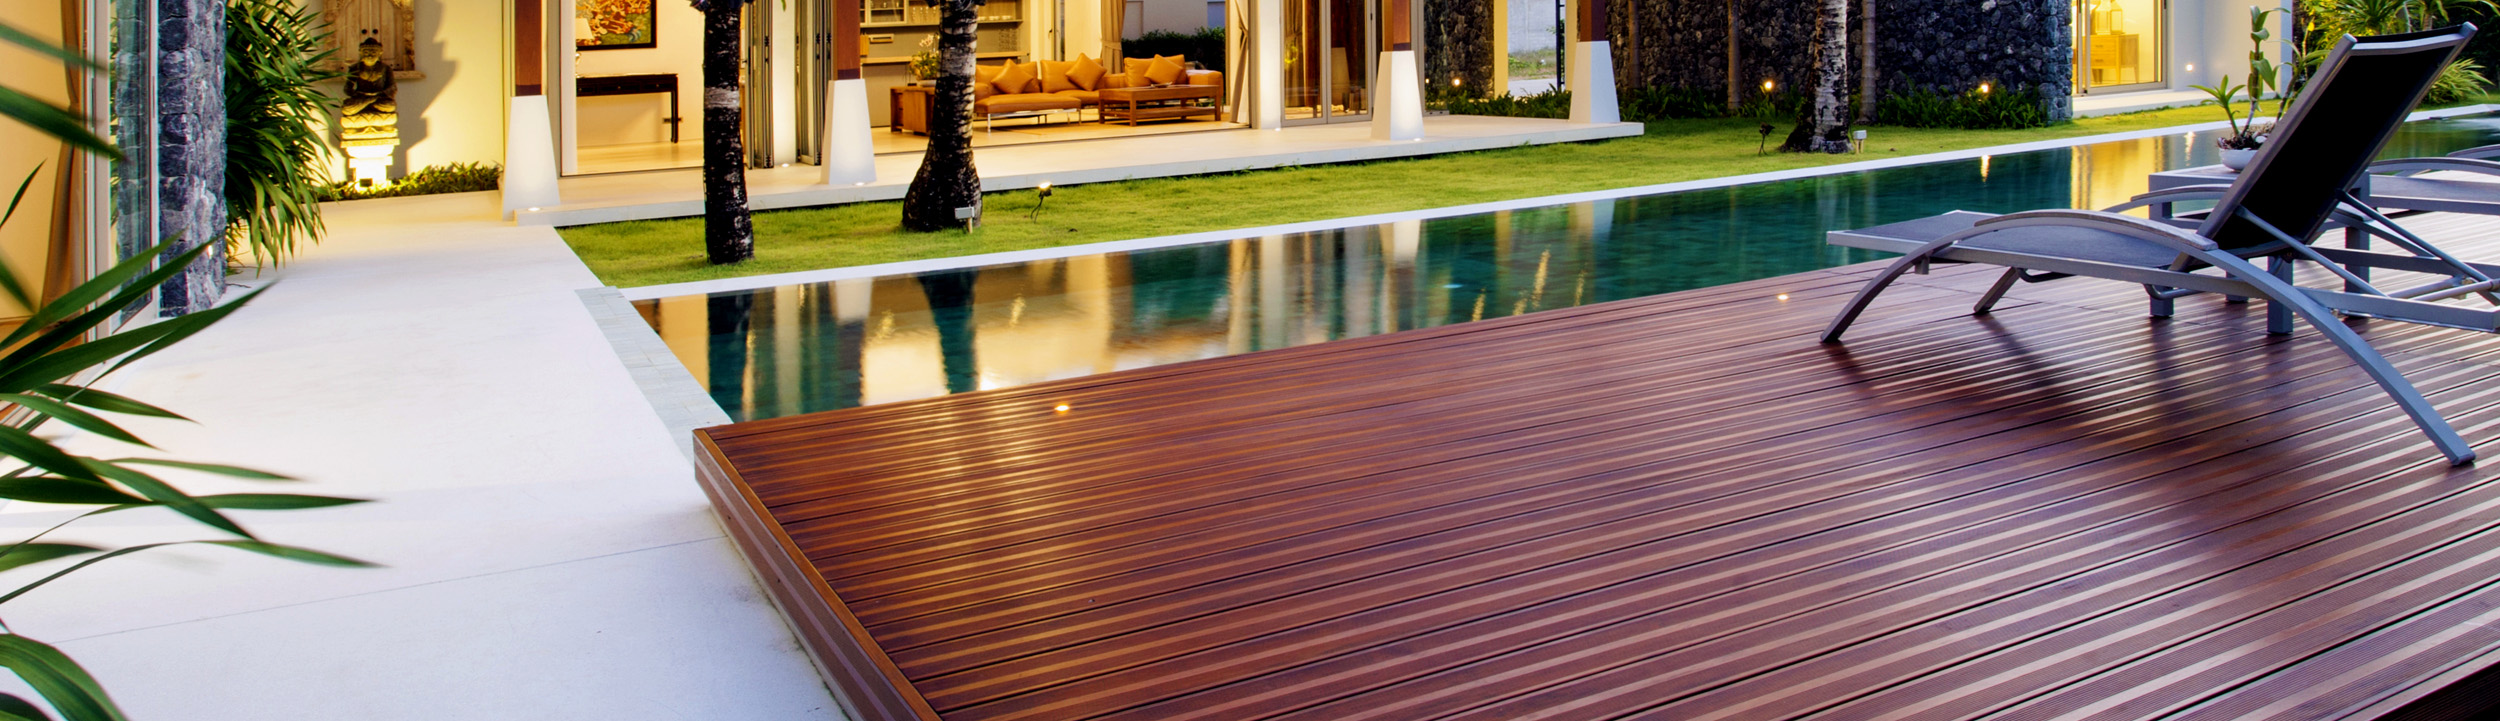 Pool deck restored in San Clemente